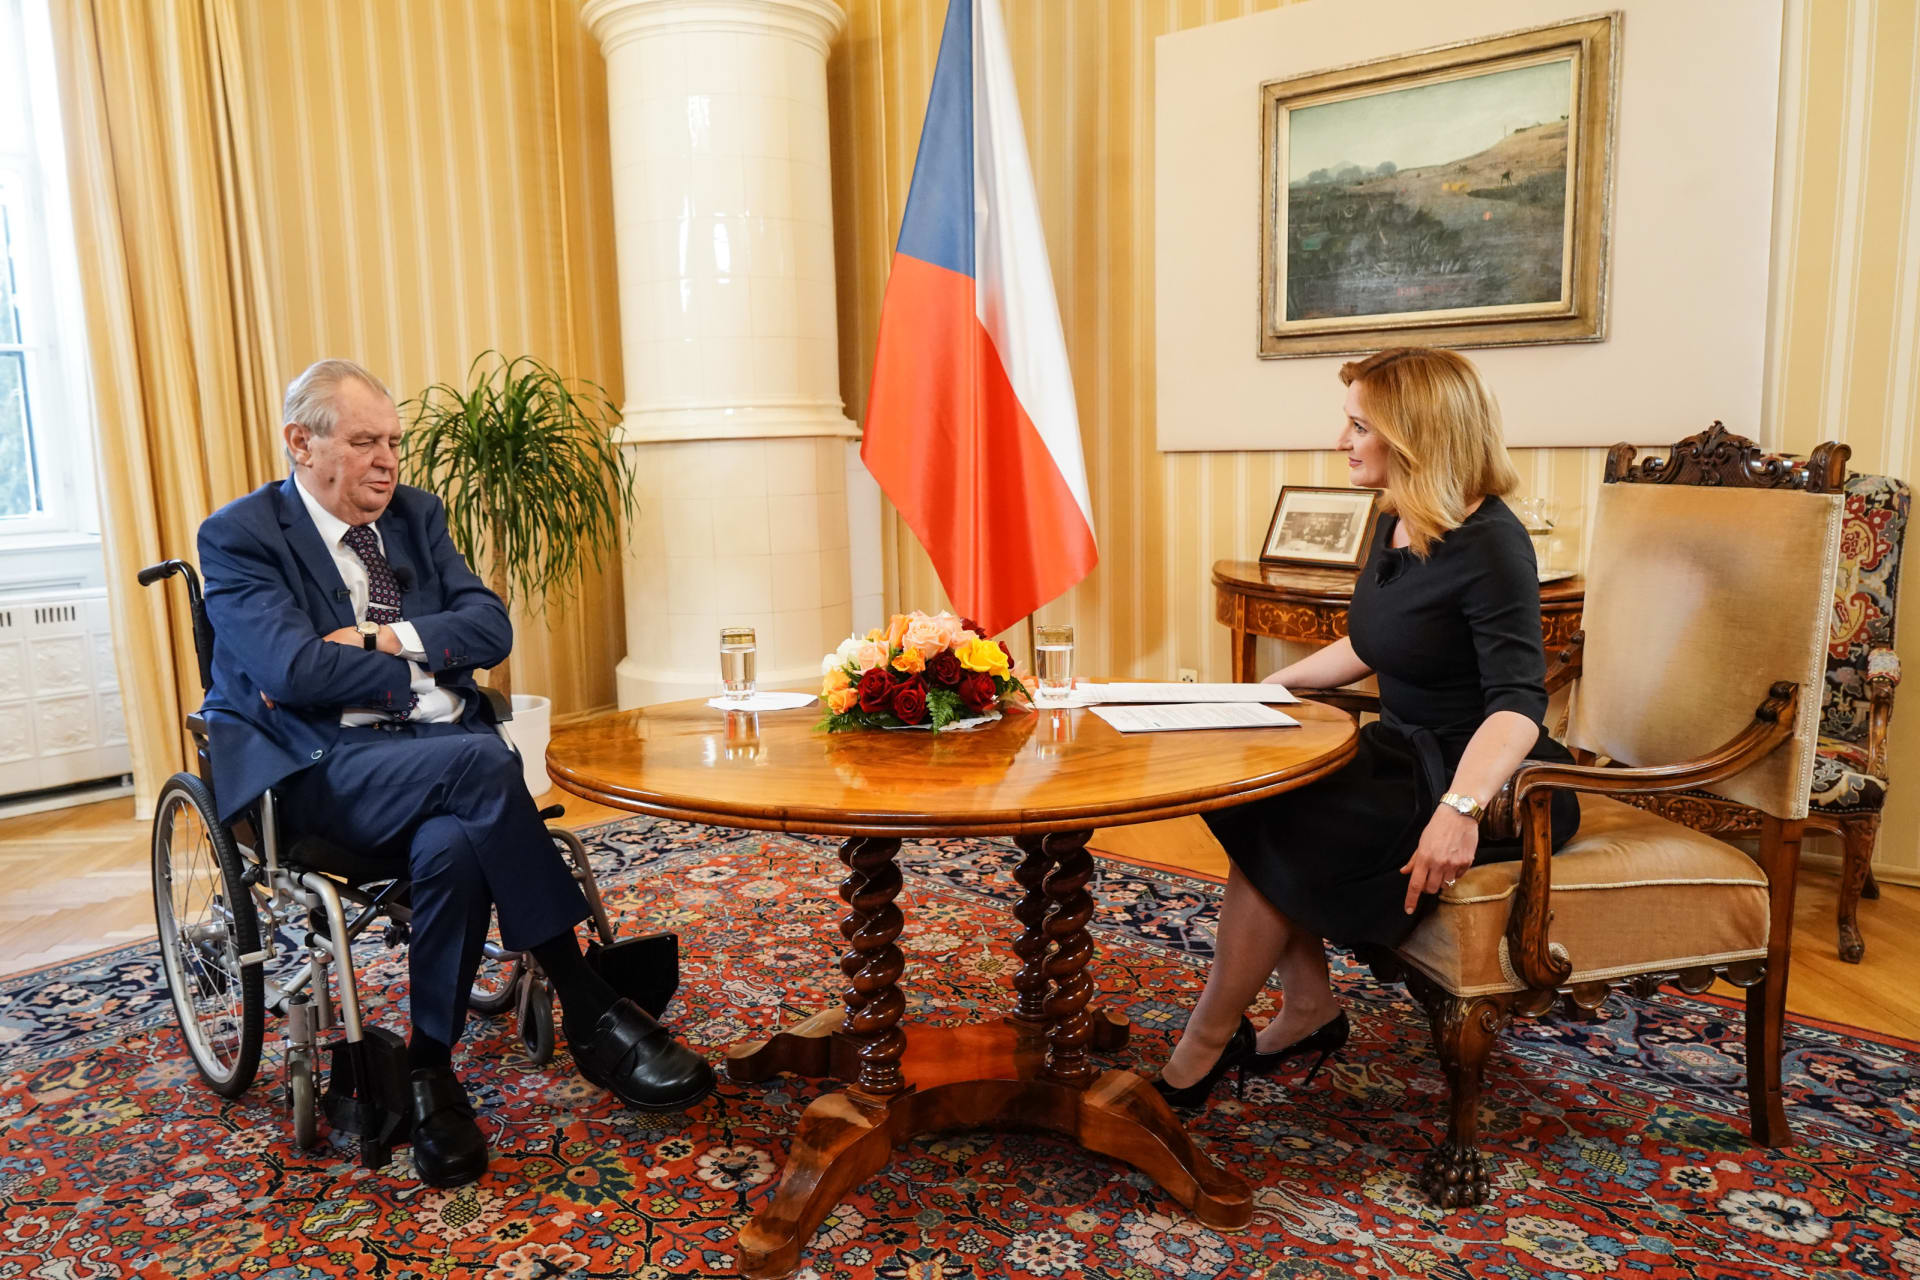 Rozhovor moderátorky Terezie Tománkové s prezidentem Milošem Zemanem